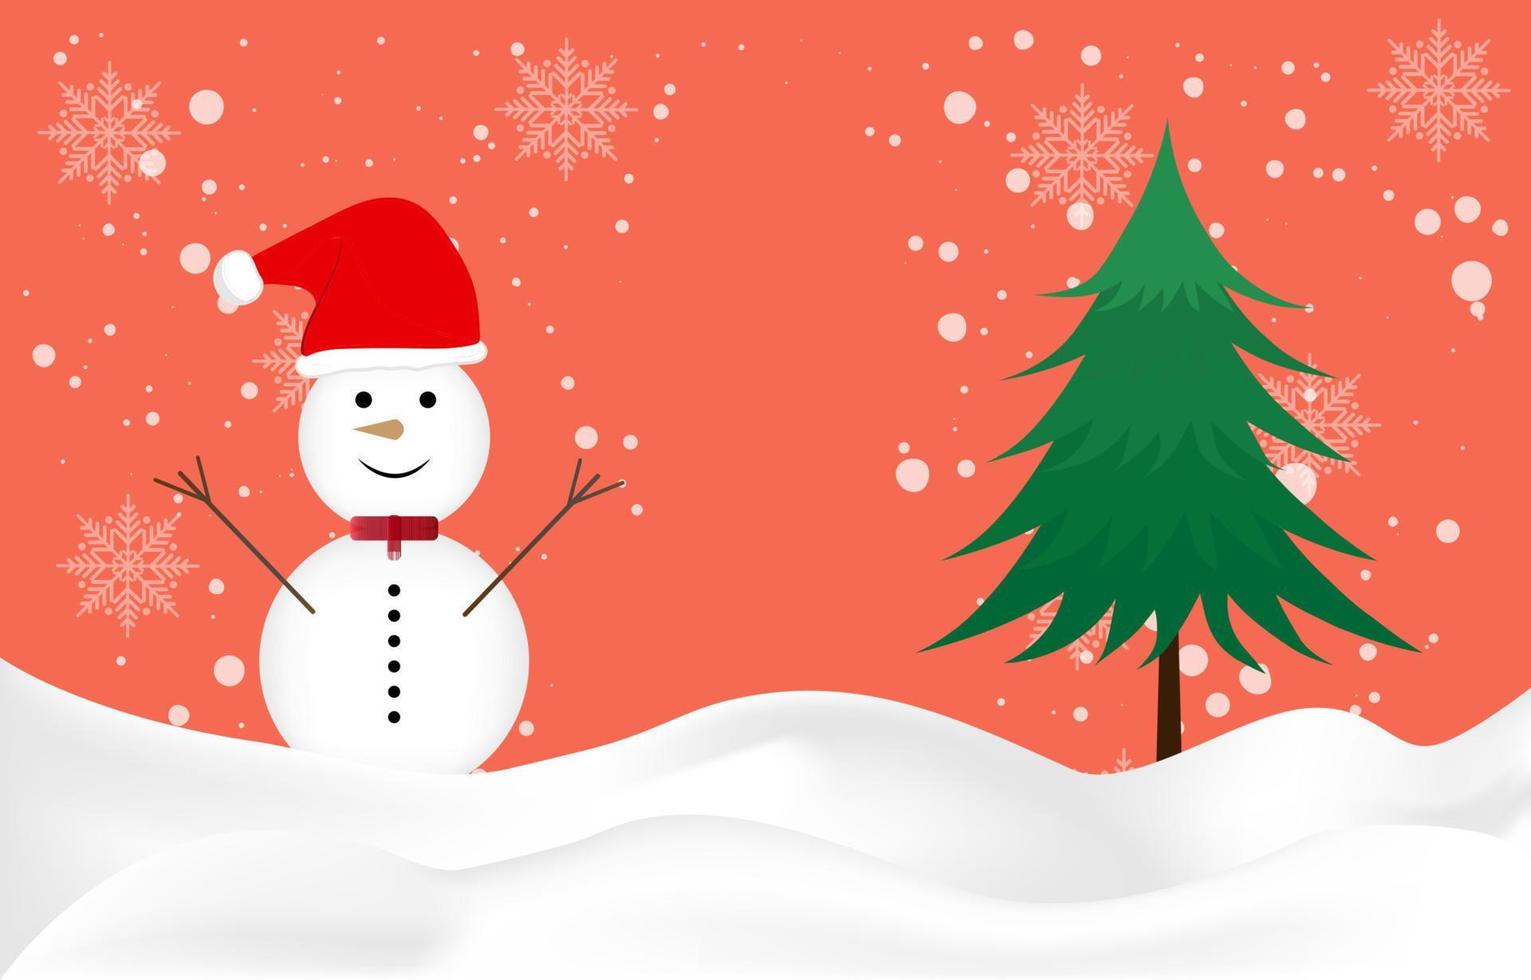 conception graphique bonhomme de neige et arbre pour carte papier pour joyeux noël bonne année conception illustration vectorielle vecteur